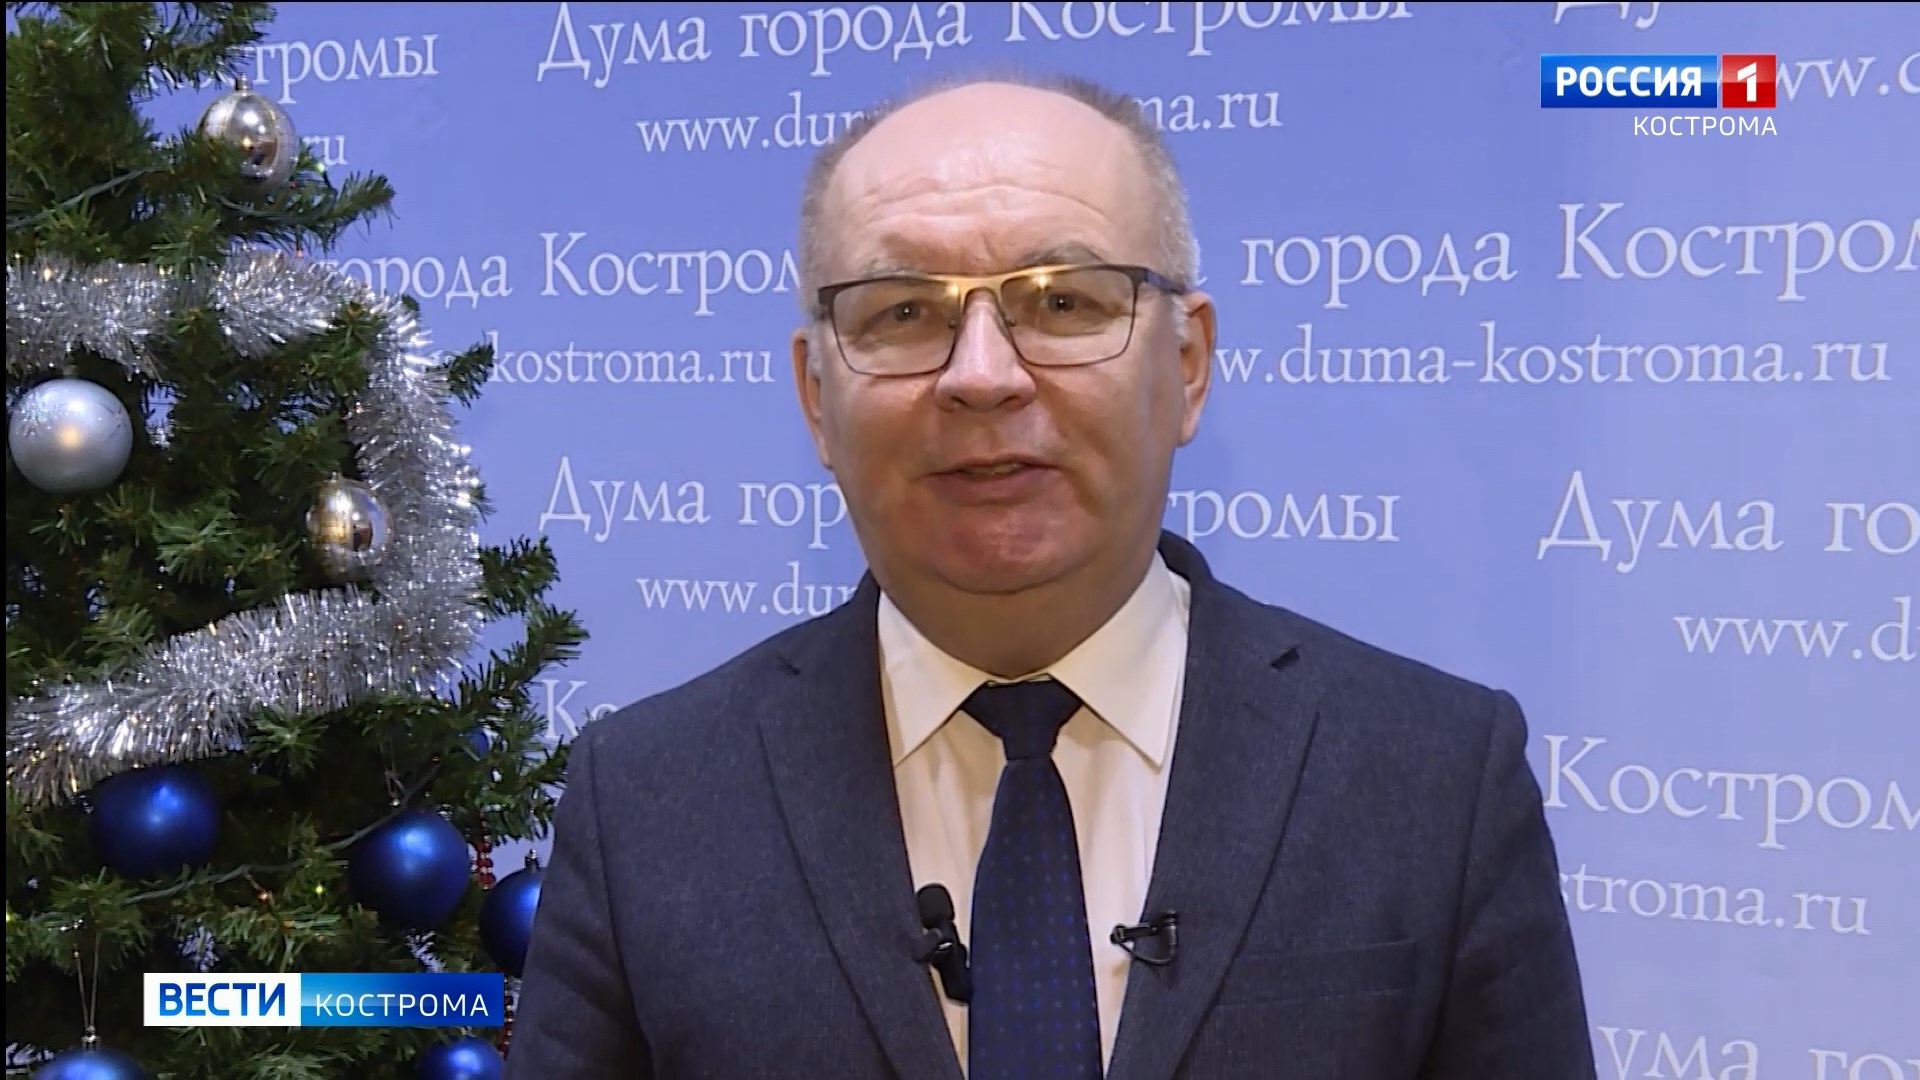 Глава Кострома Юрий Журин пожелал всем много радости в новом году